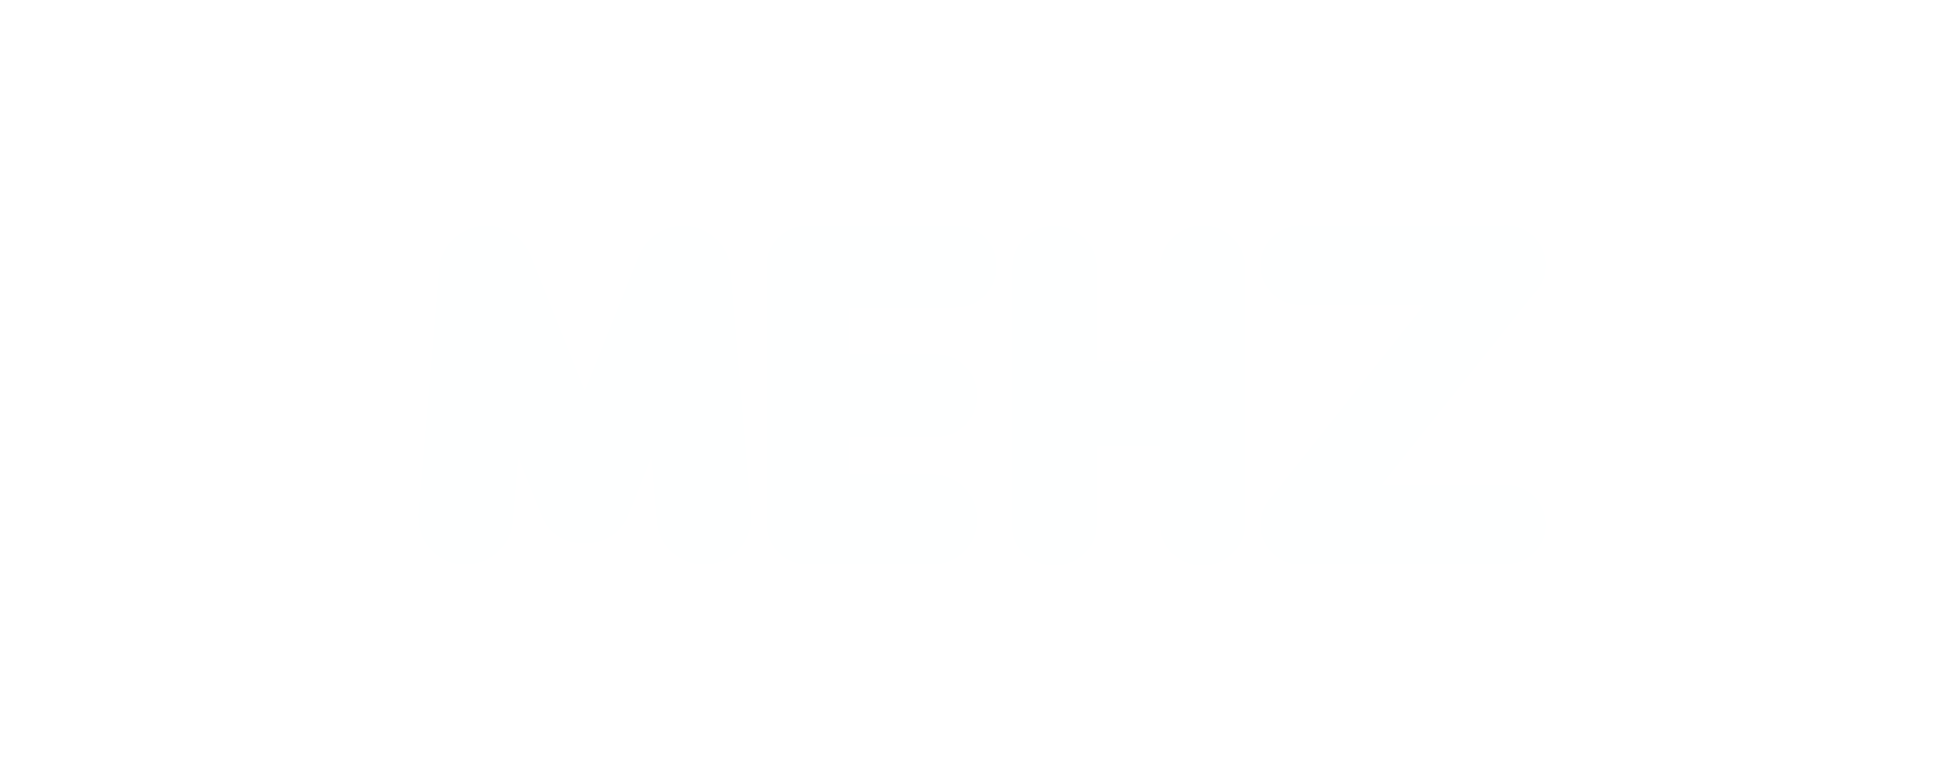 MEHZ - Soundtrack